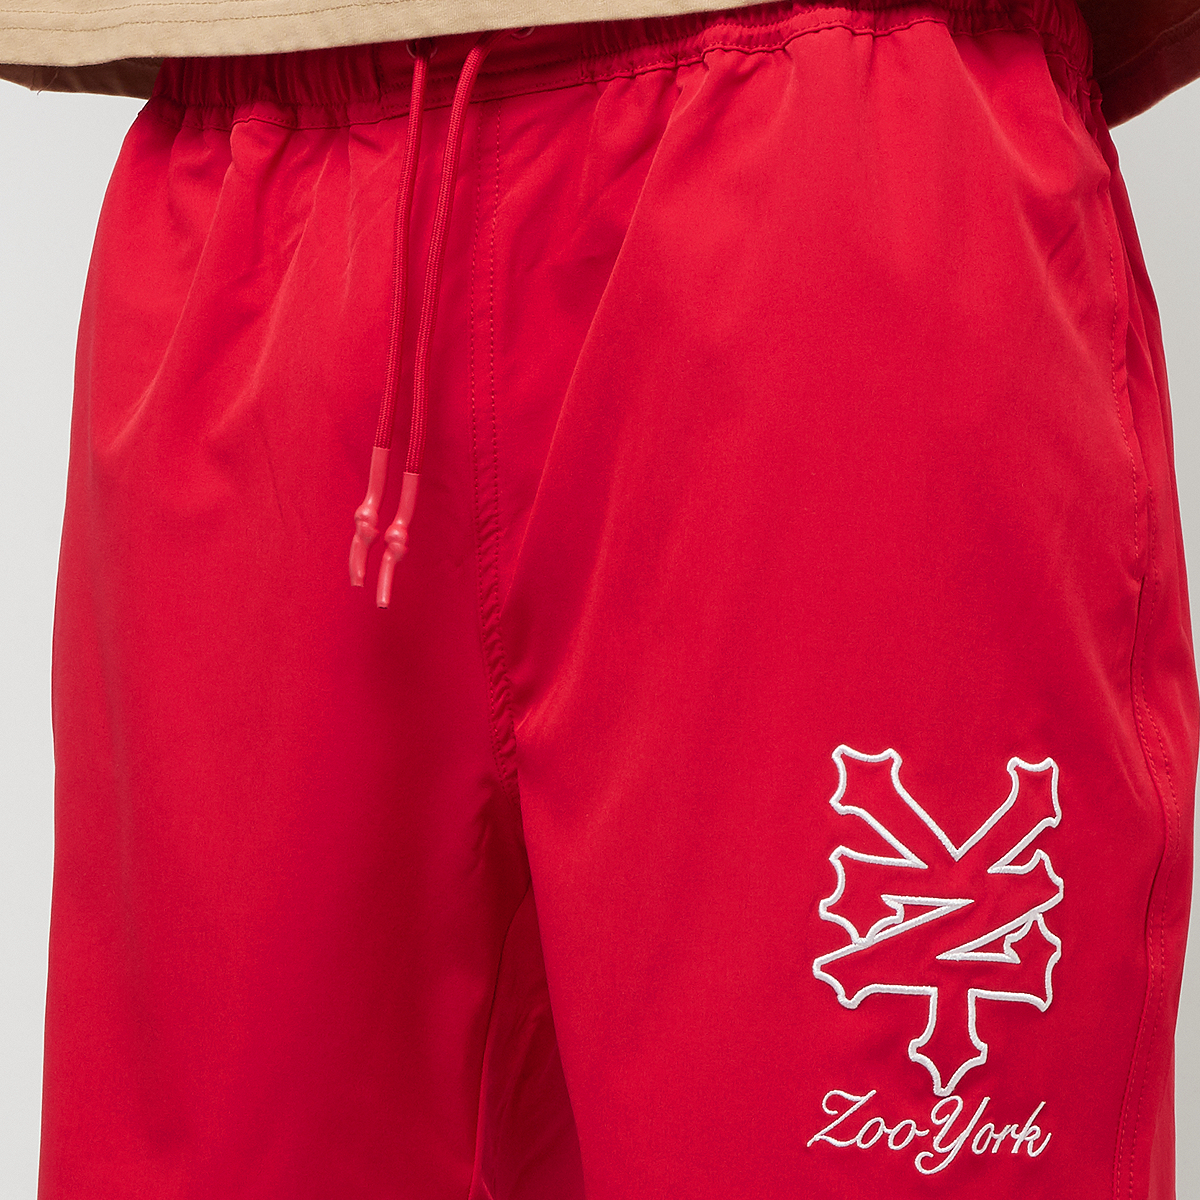 ZOO YORK Signature Nylon Shorts Sportshorts Heren red maat: S beschikbare maaten:S M L XL